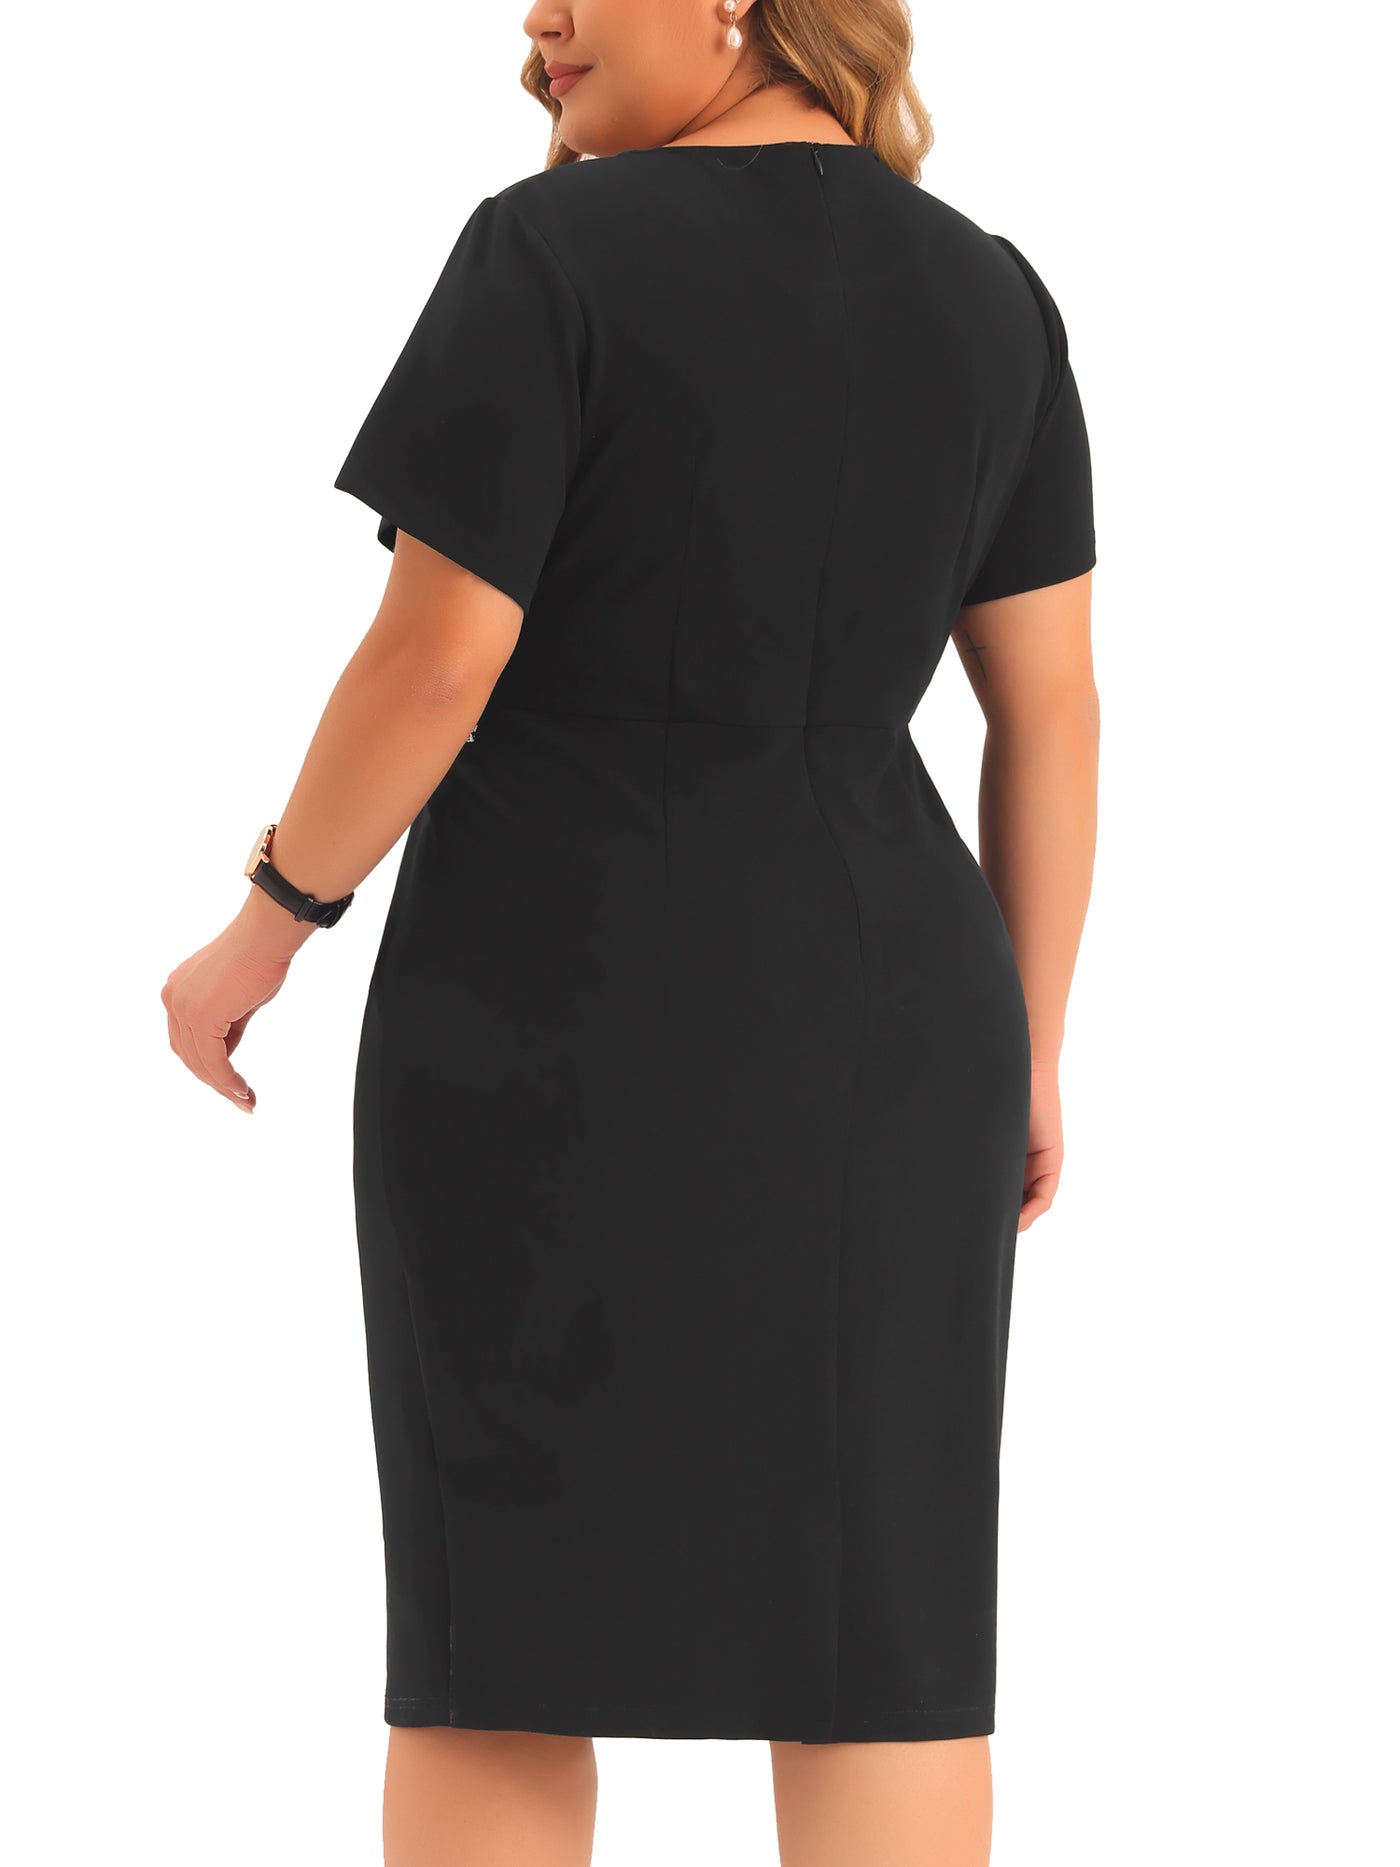 Bublédon Plus Size Dresses for Women Vintage Sheath Short Sleeve Bodycon Business Pencil Dress